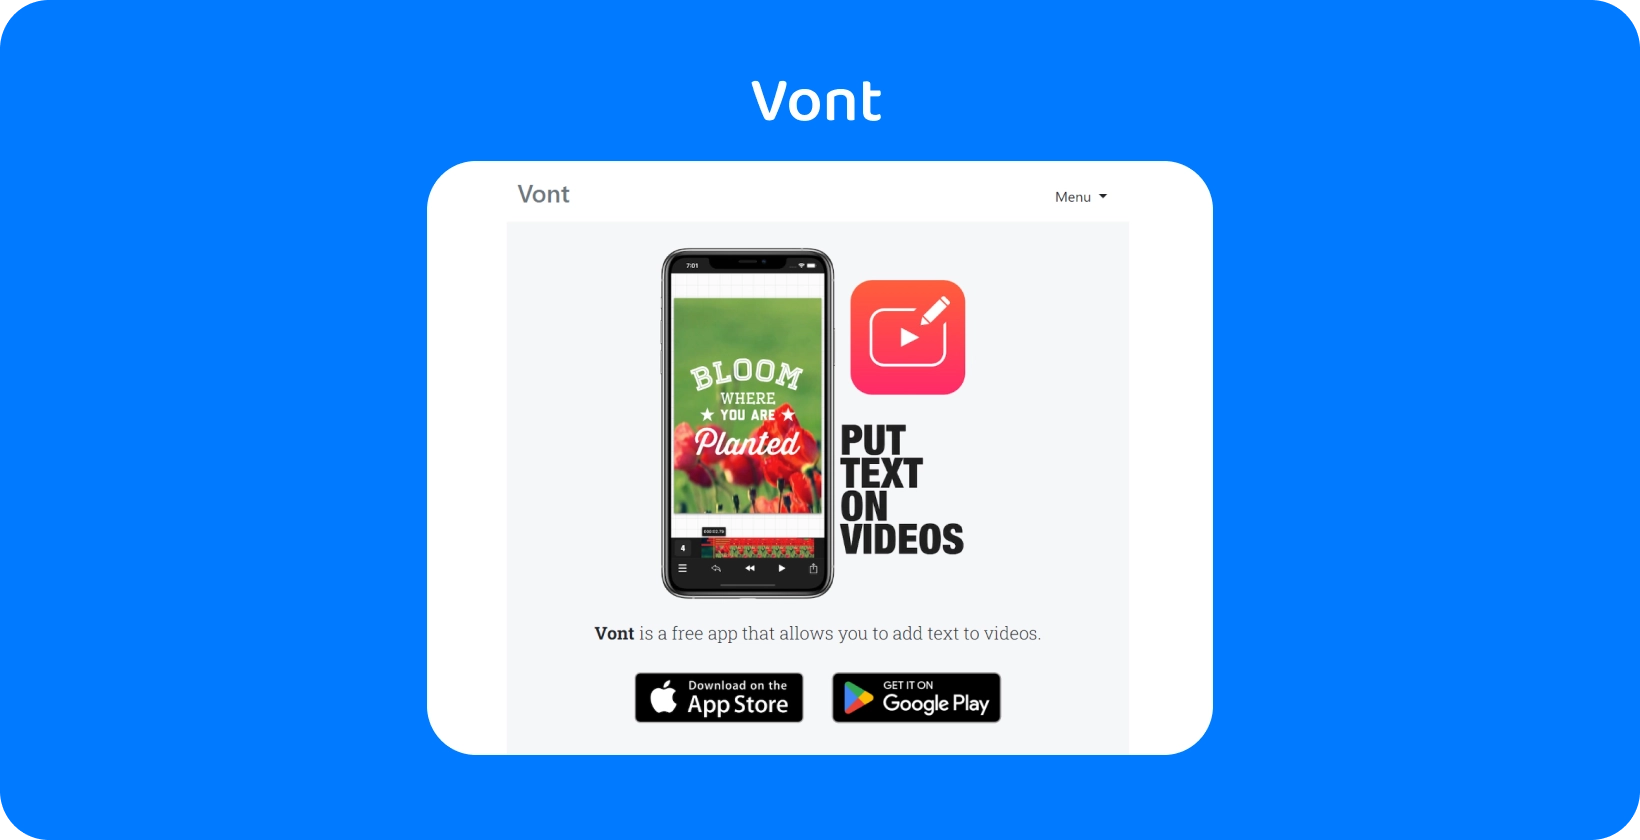 Smartphone affichant l’interface de l’application Vont, mettant en évidence sa fonctionnalité pour ajouter du texte sur les vidéos, disponible sur App Store et Google Play